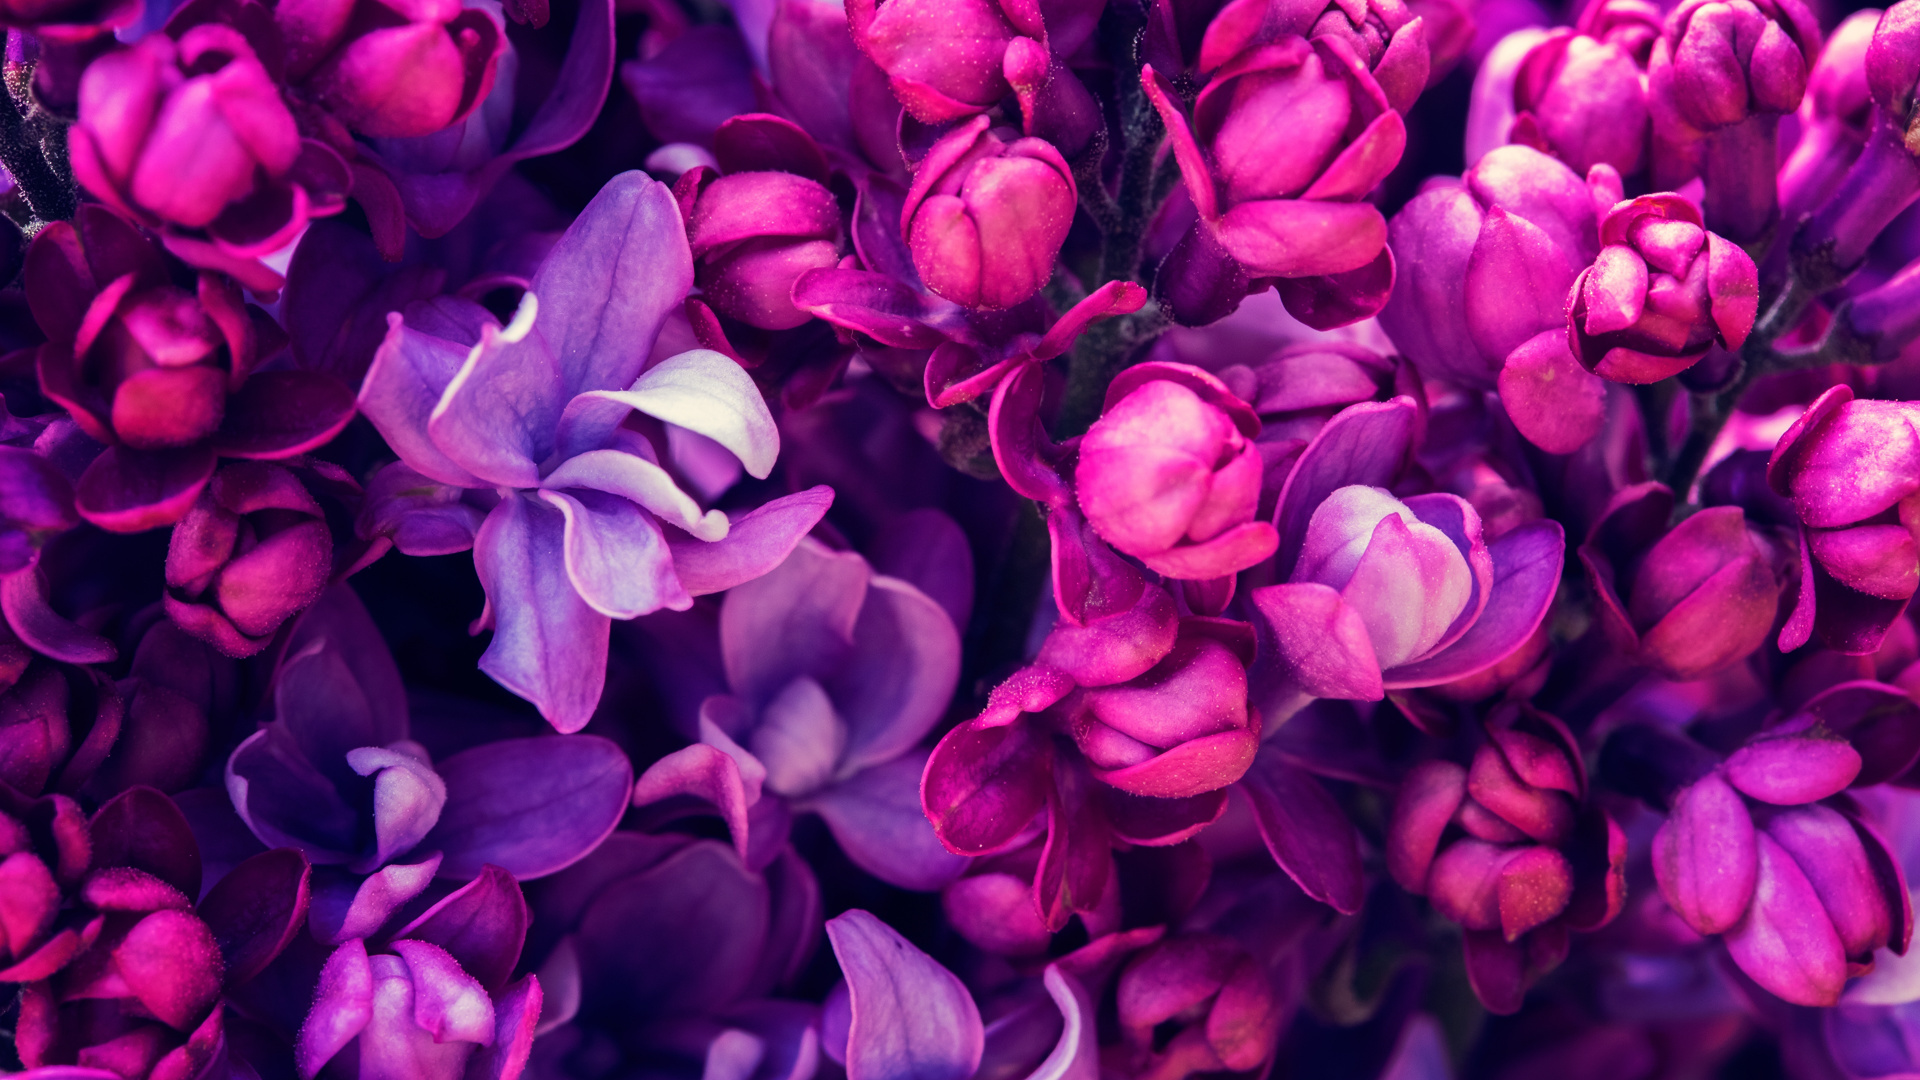 Purple Flowers in Macro Shot. Wallpaper in 1920x1080 Resolution